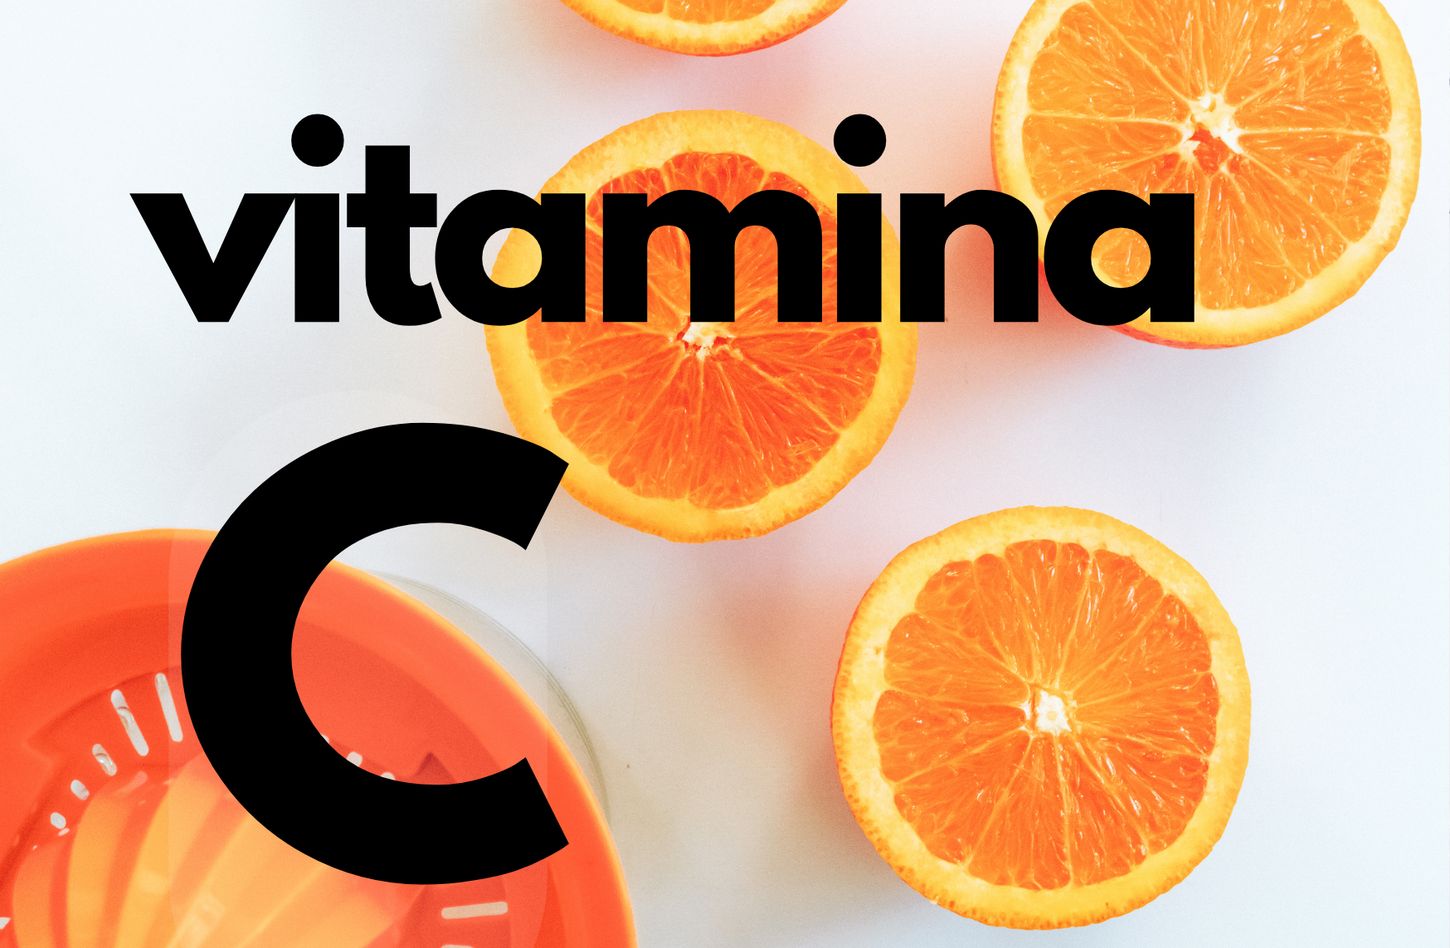 Beneficios del suplemento de Vitamina C con gotero o drip